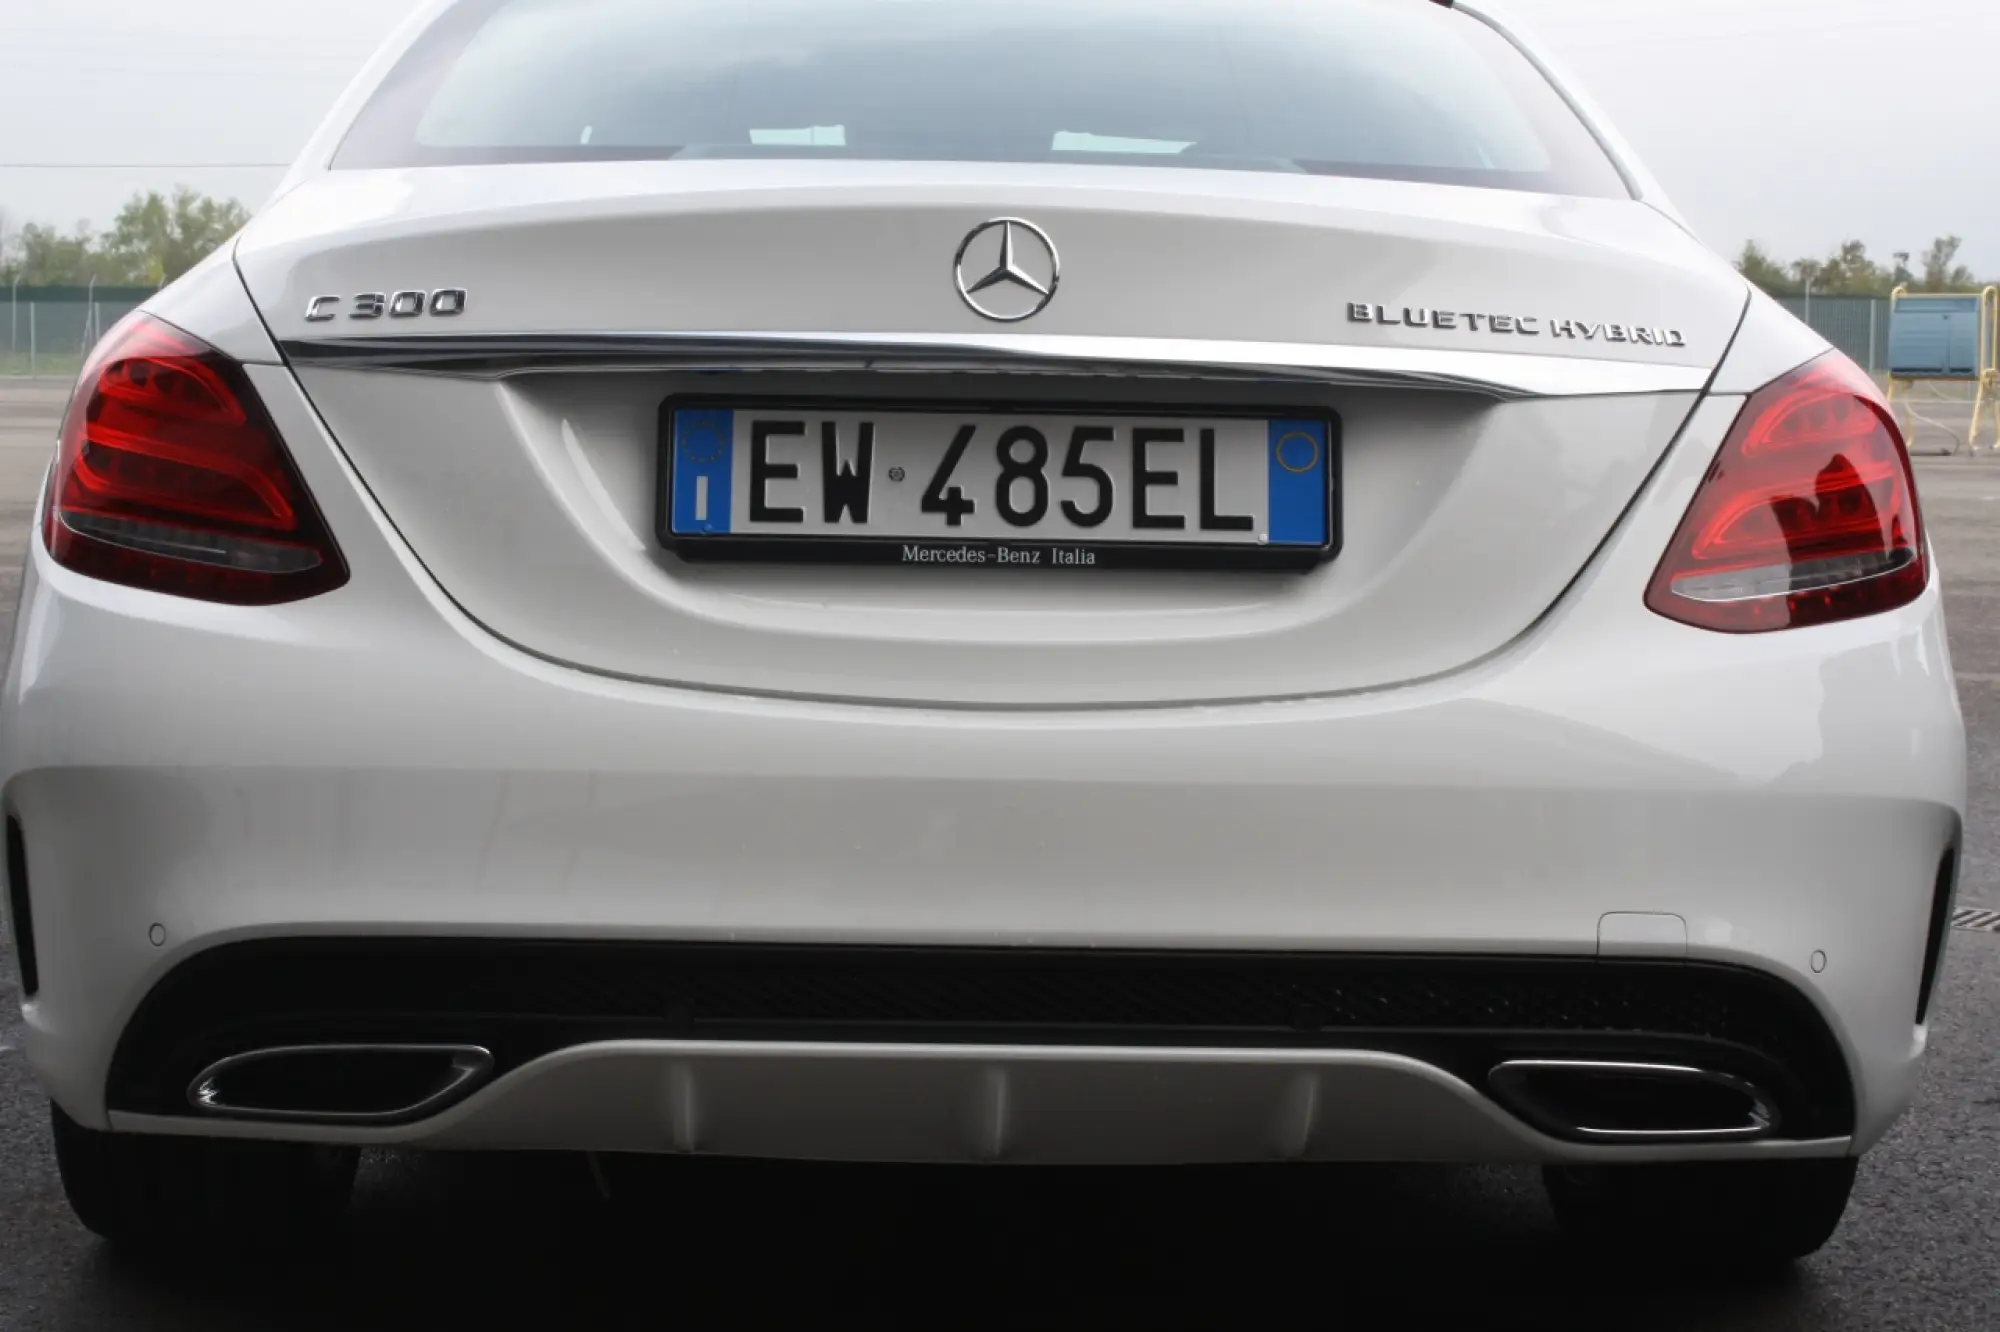 Mercedes-Benz Classe C Hybrid - primo contatto (2014) - 33